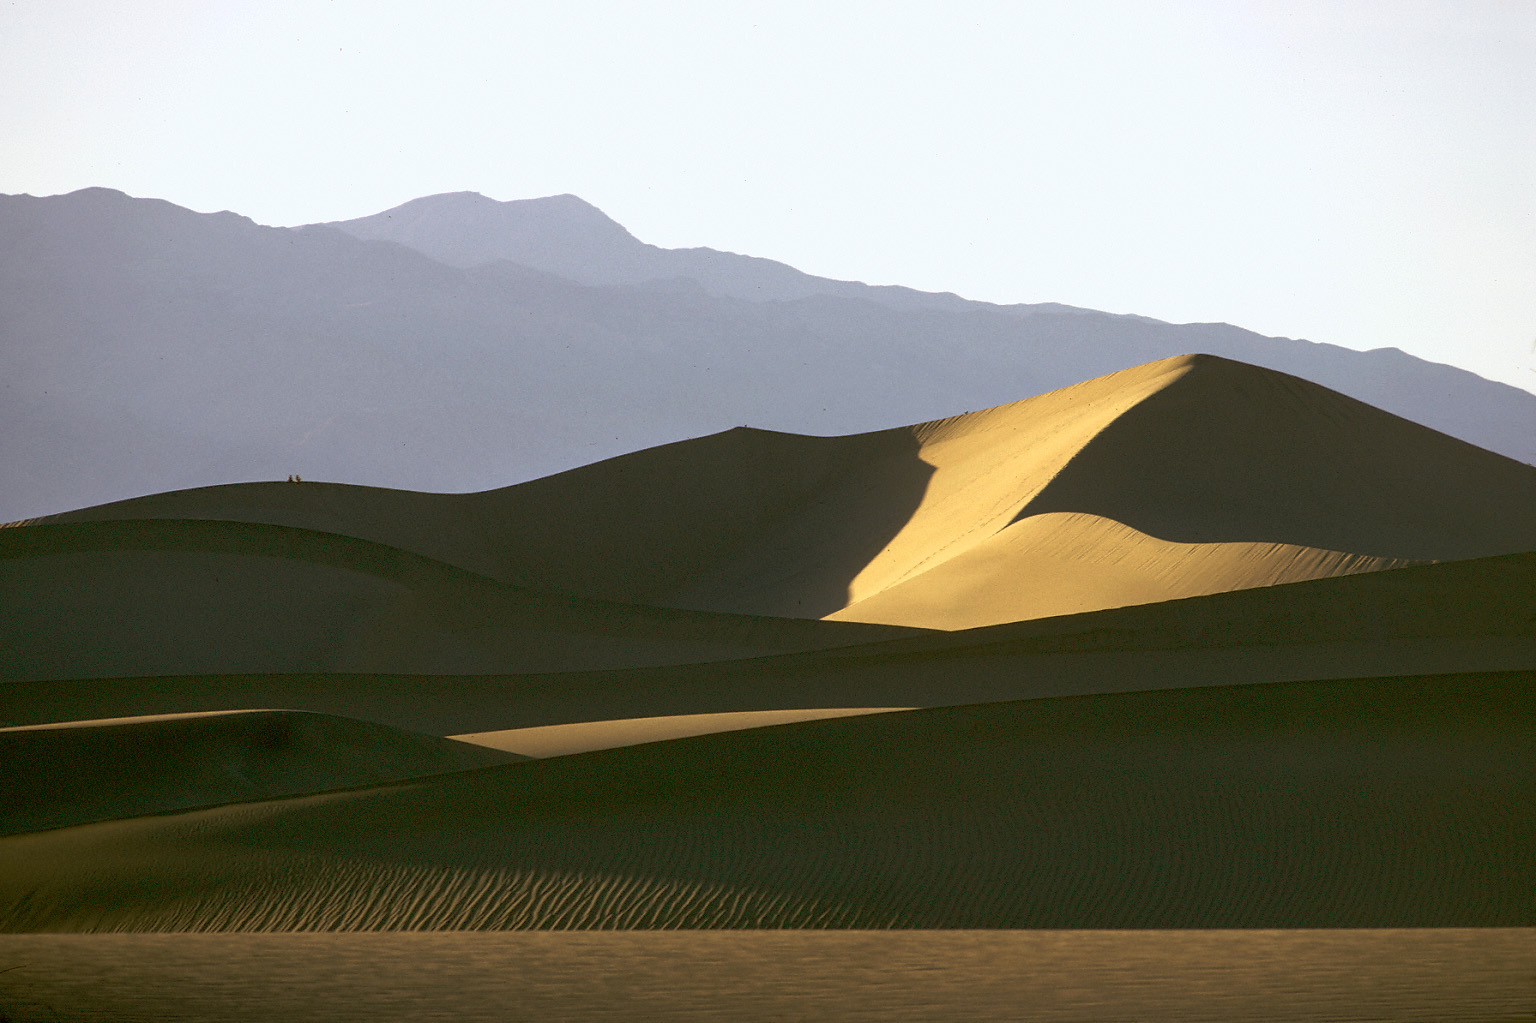 bill-hocker-dunes-death-valley-california-1974